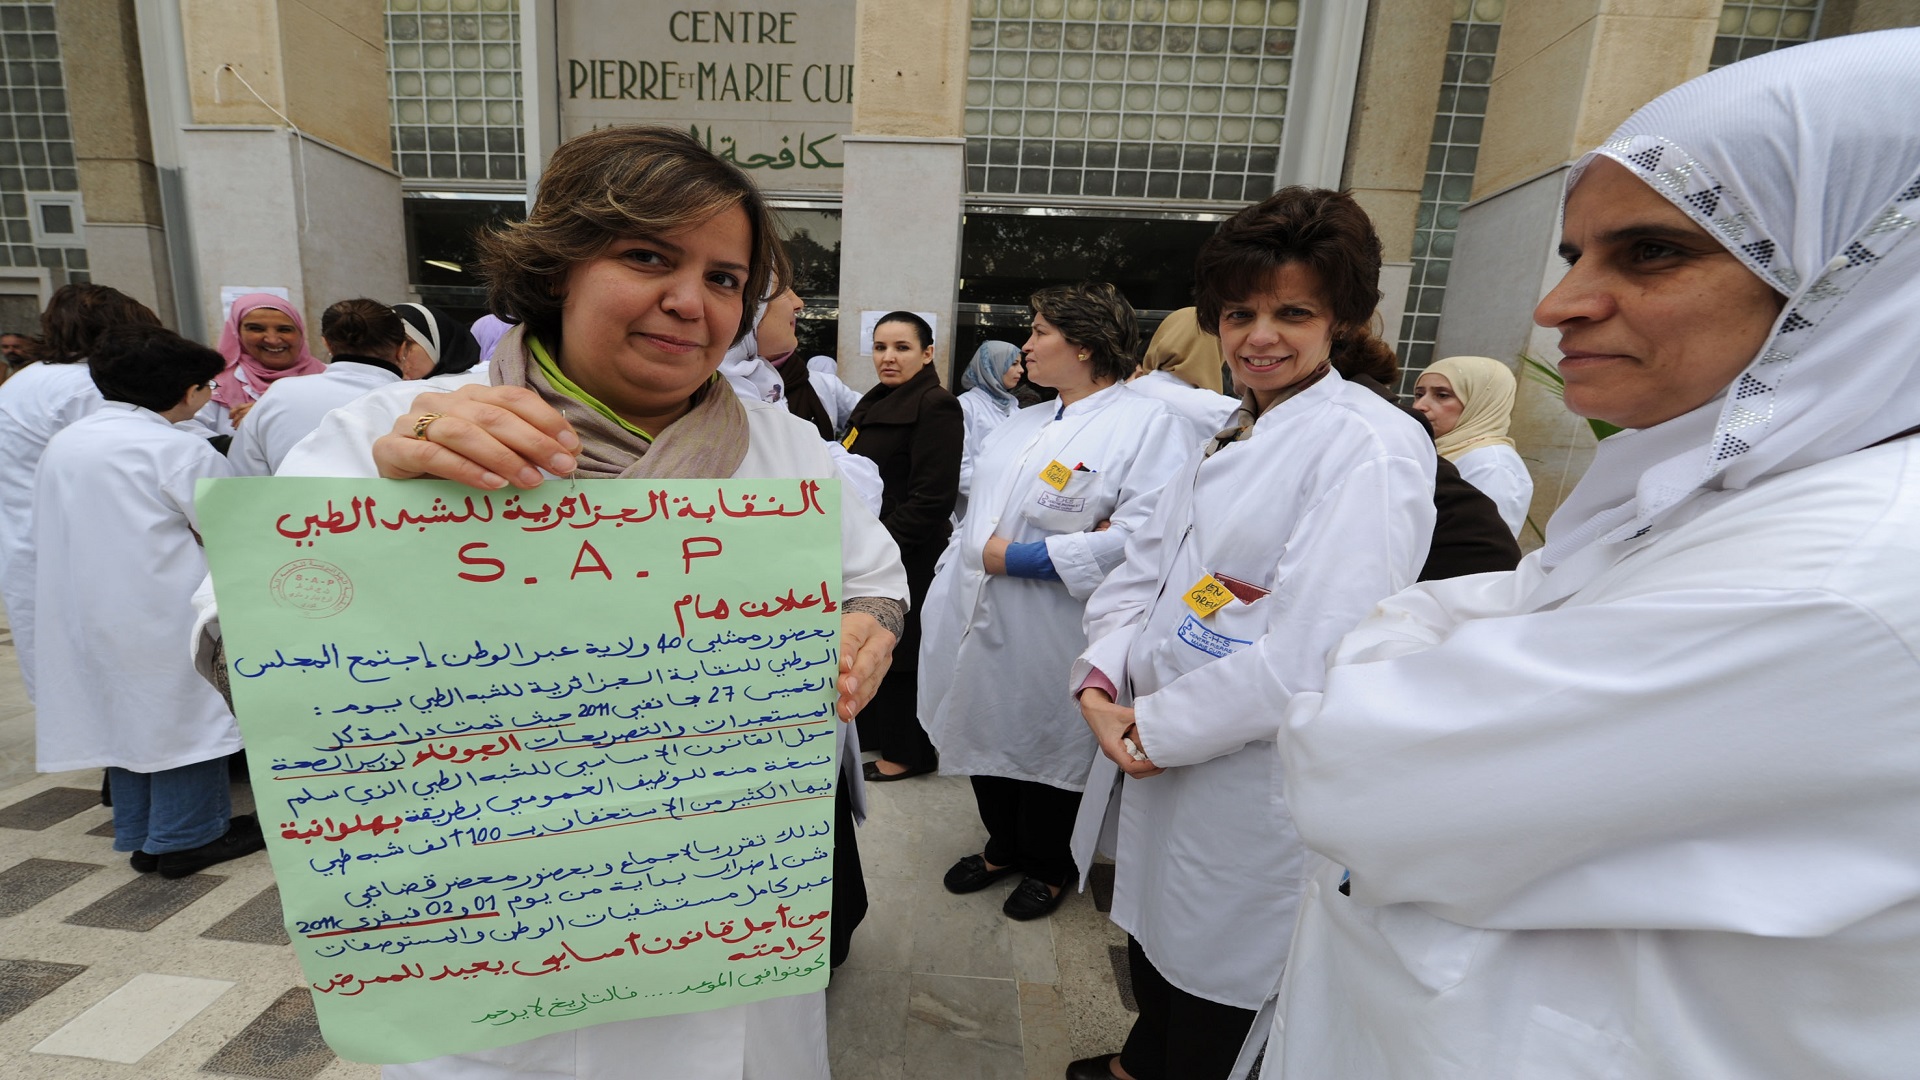 الاحتجاجات تشلُّ مستشفيات الجزائر والسلطات تواجه المطالب بـ”التجاهل والترهيب”